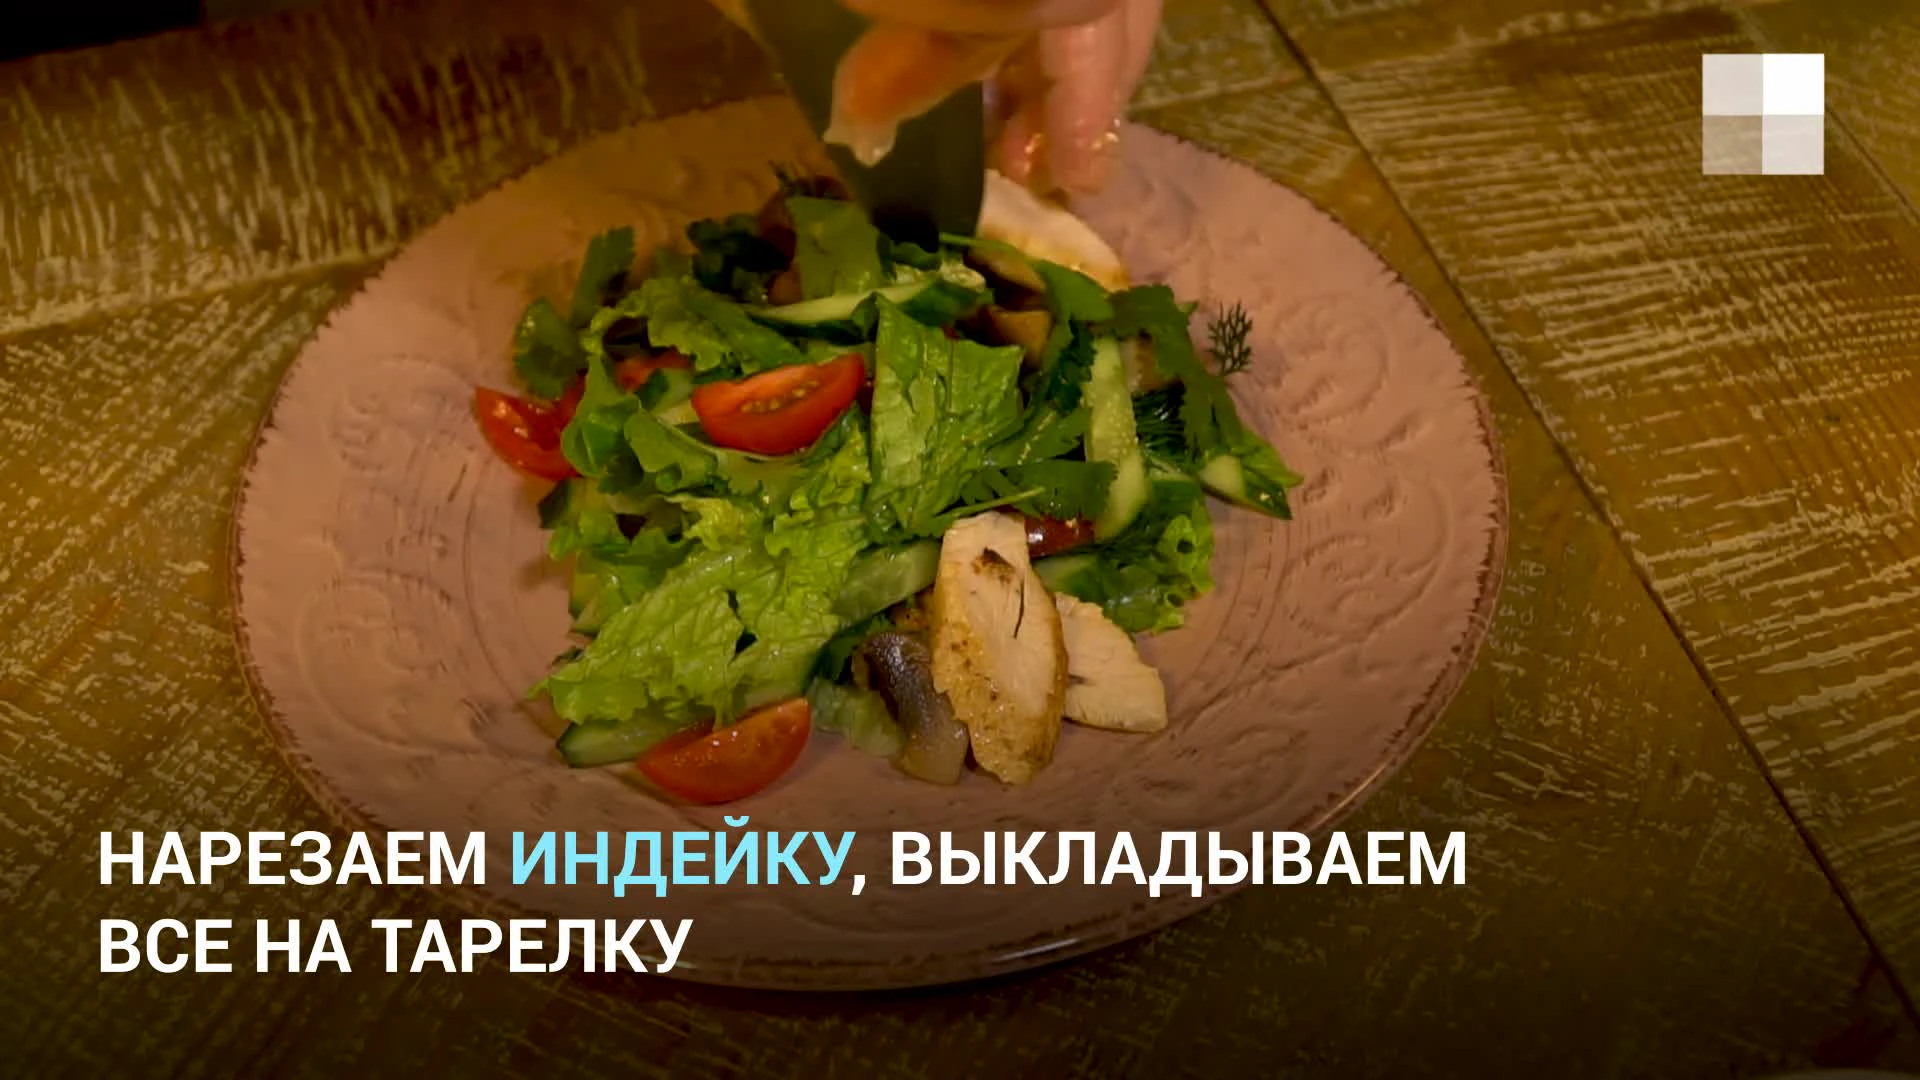 Простыерецептысалатов - смотреть пошаговые видео-рецепты онлайн на Повар.TV